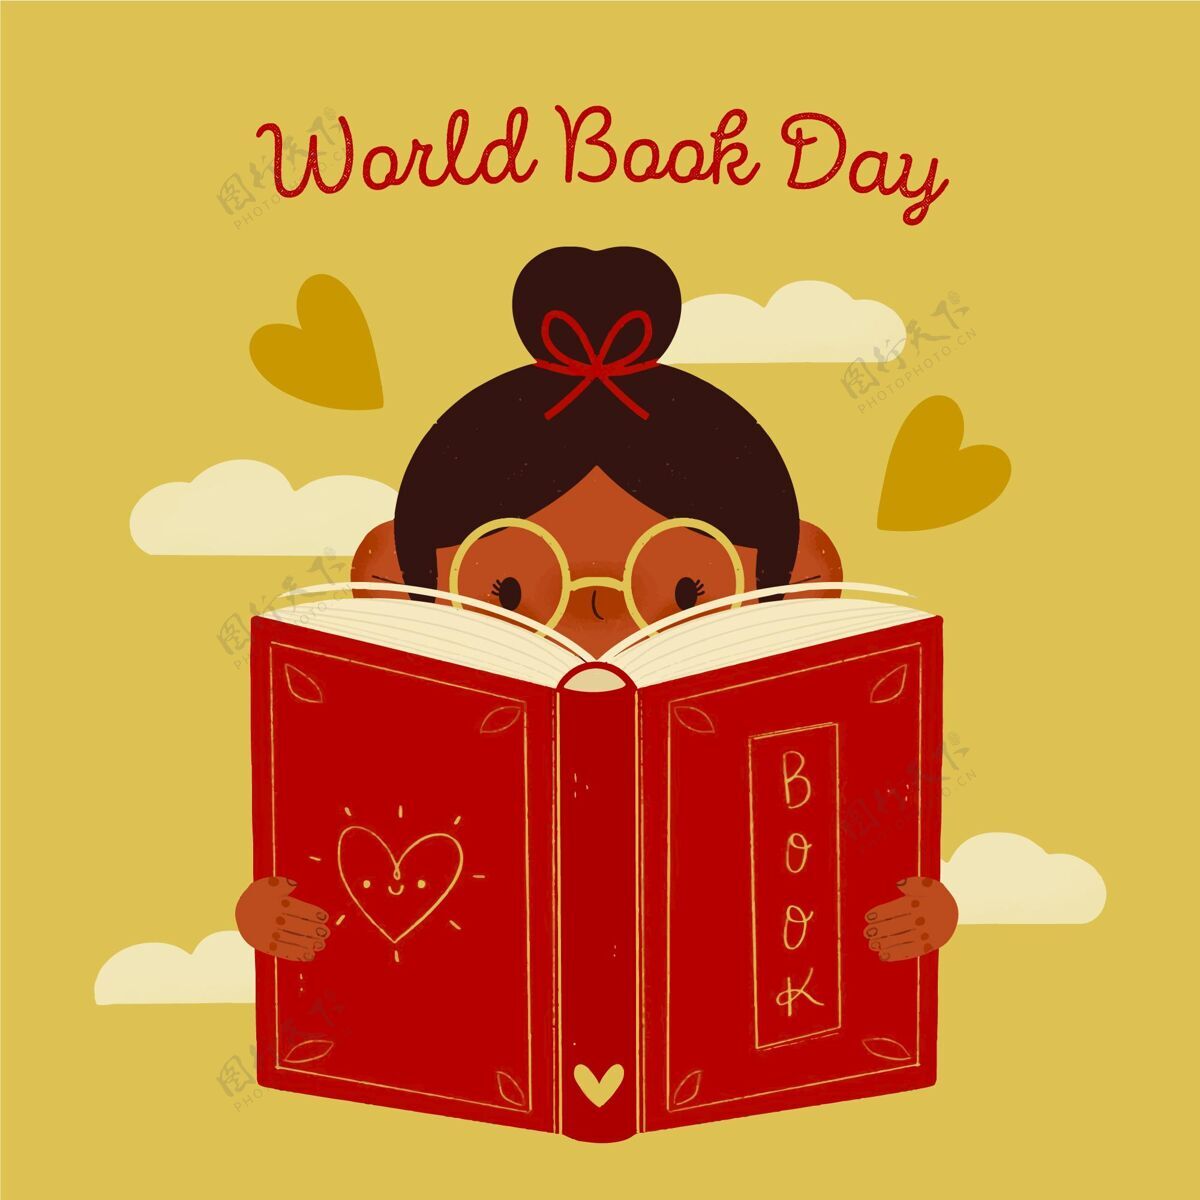 图书日手绘世界图书日插图手绘国际版权日